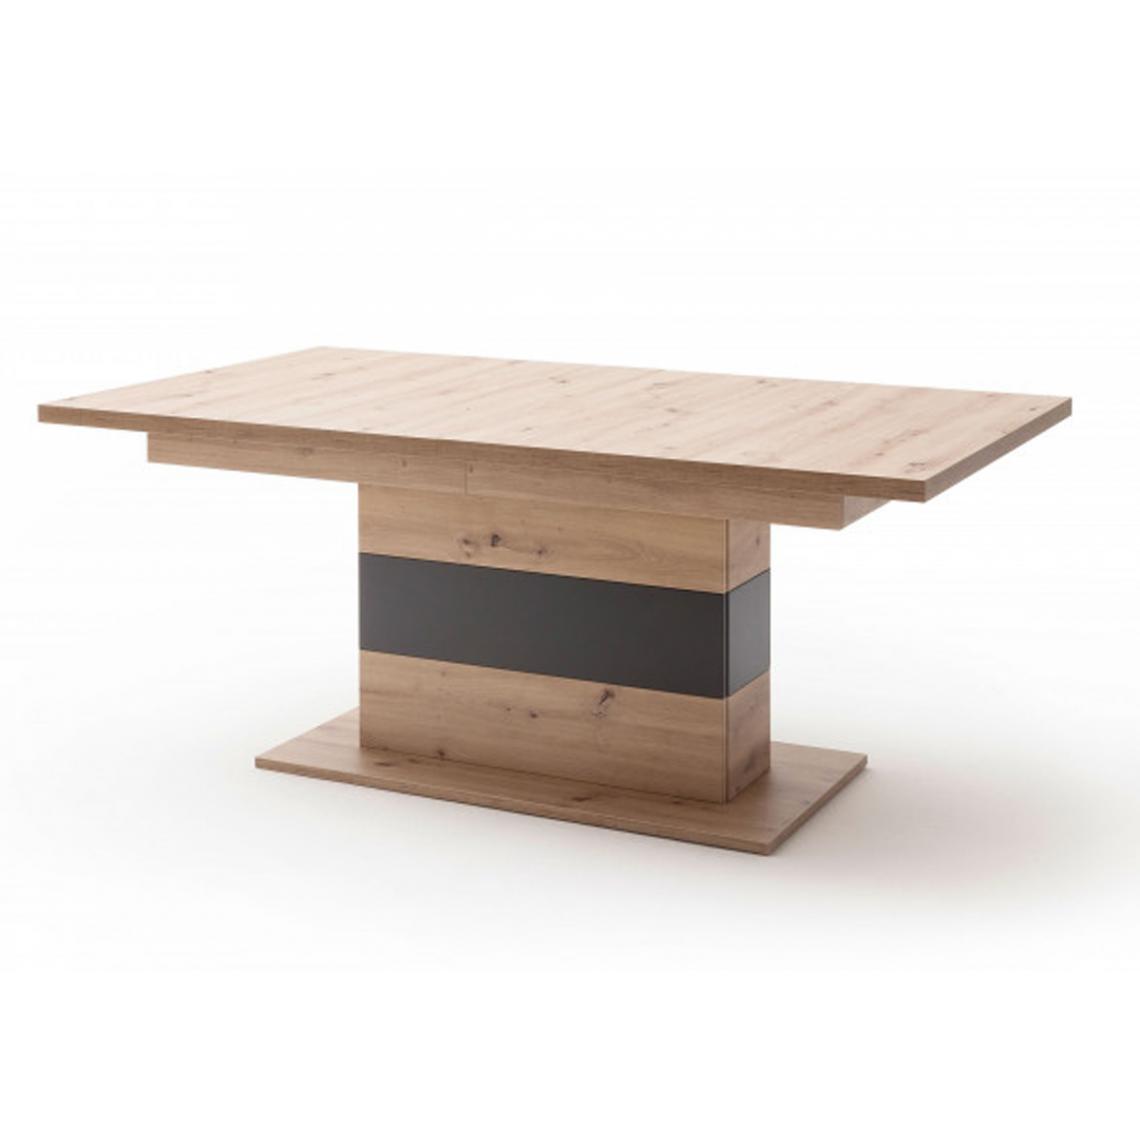 Pegane - Table à manger extensible en bois , imitaion chêne - L.180-280 x H.77 x P.100 cm - Tables à manger